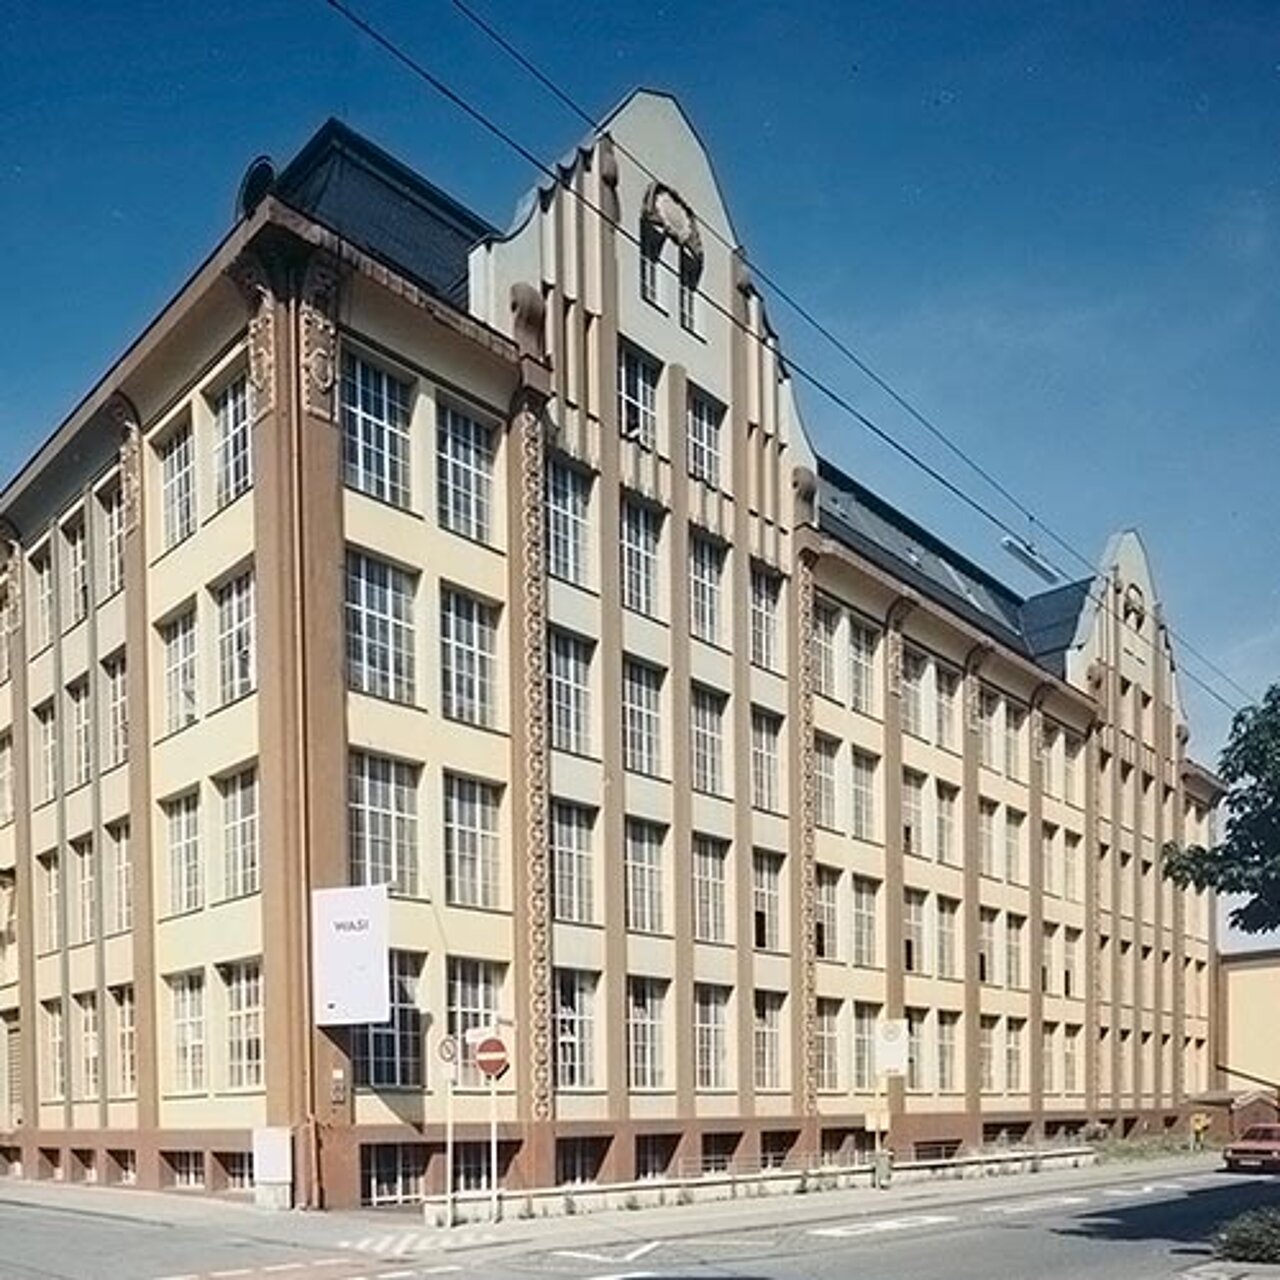 Früheres Unternehmensgebäude von WASI in Wuppertal 1961